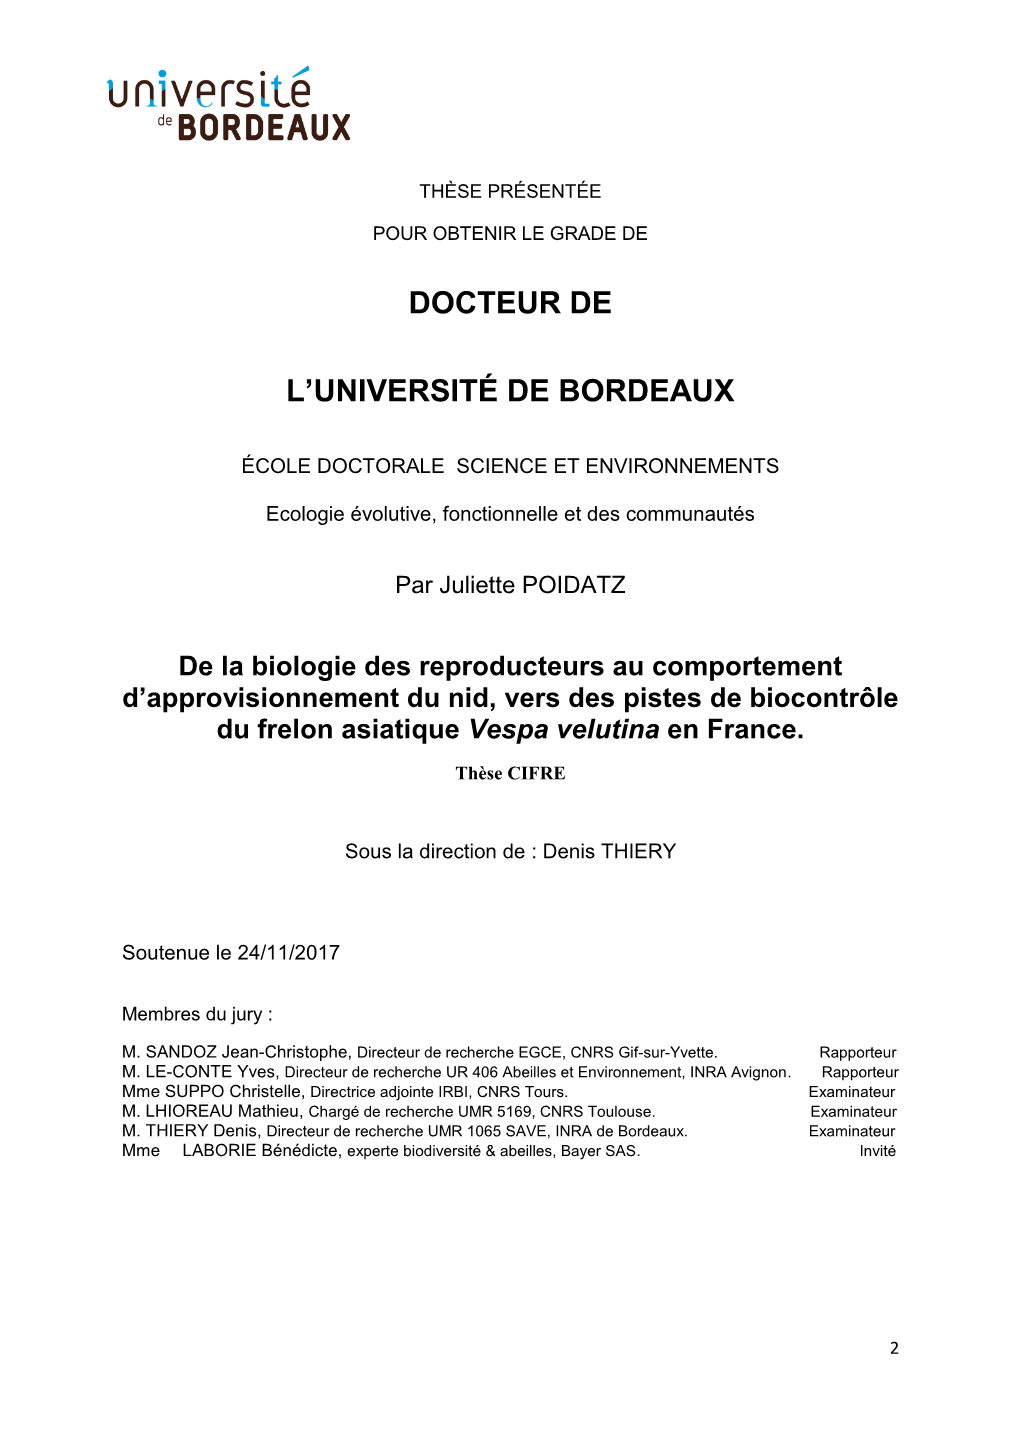 Docteur De L'université De Bordeaux